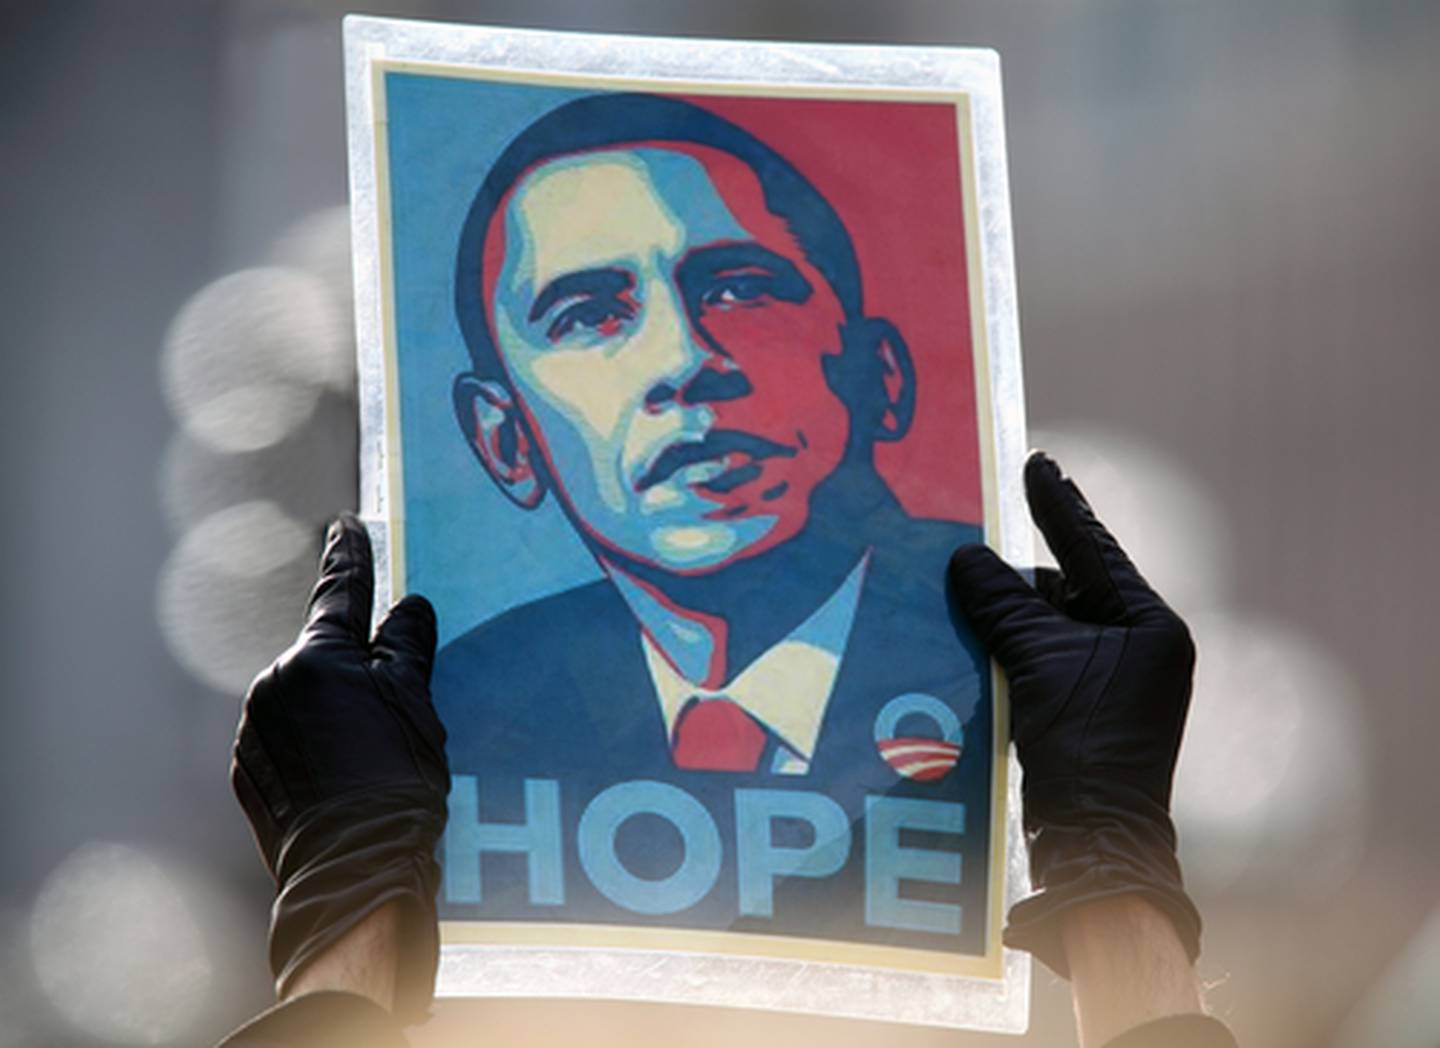 El afiche con la palabra 'Hope' (esperanza) se convirtió en el ícono de la campaña electoral estadounidense del 2008, ganada por Barack Obama.